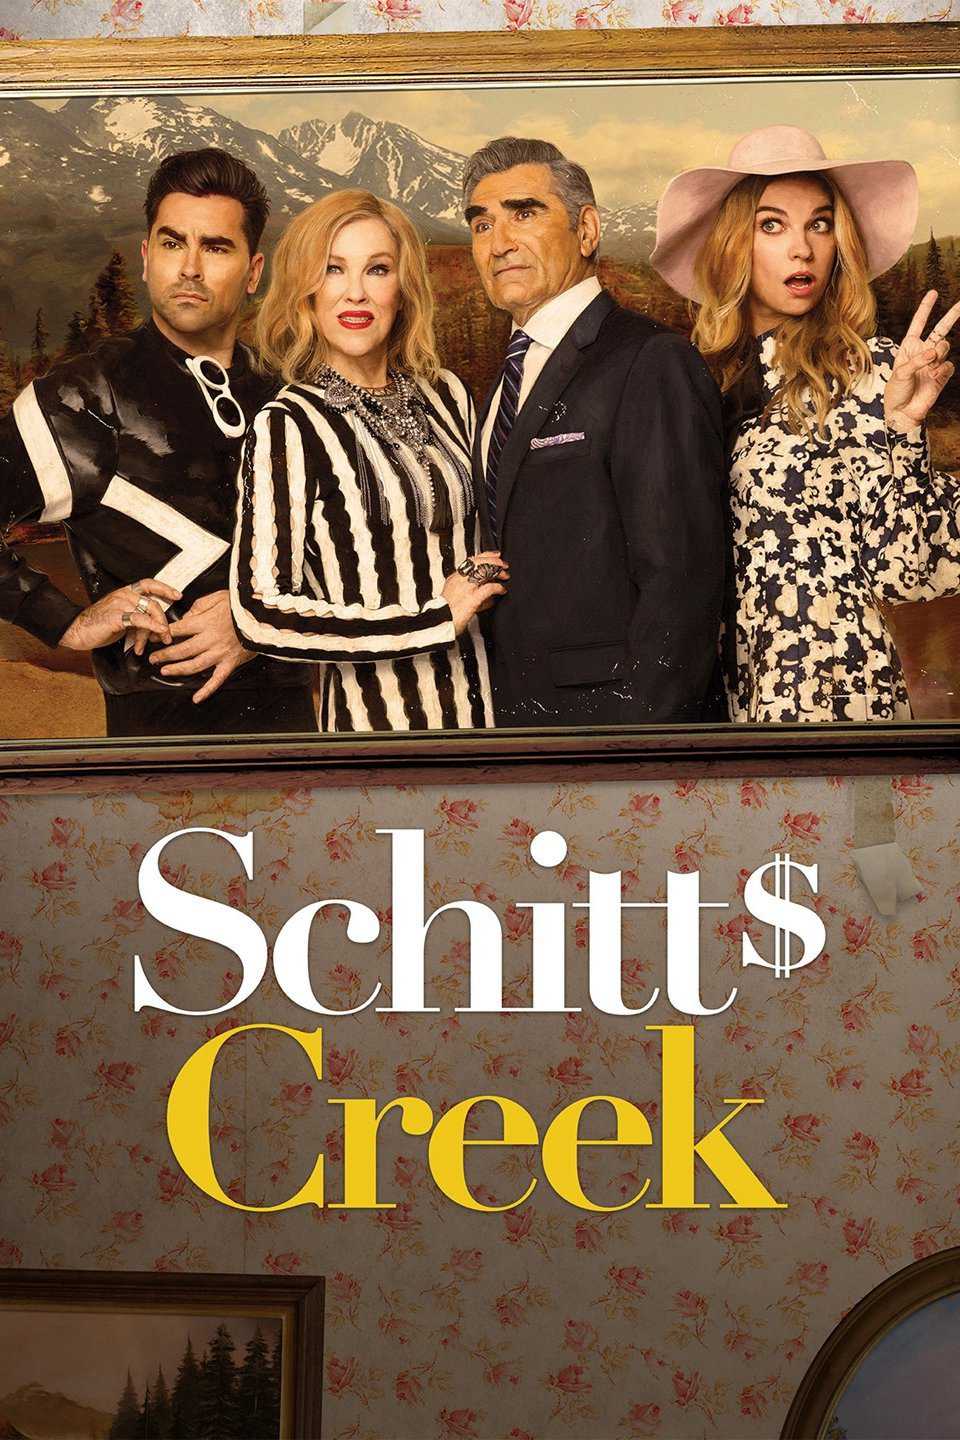 Schitt's creek (phần 4) - Schitt's creek (season 4)